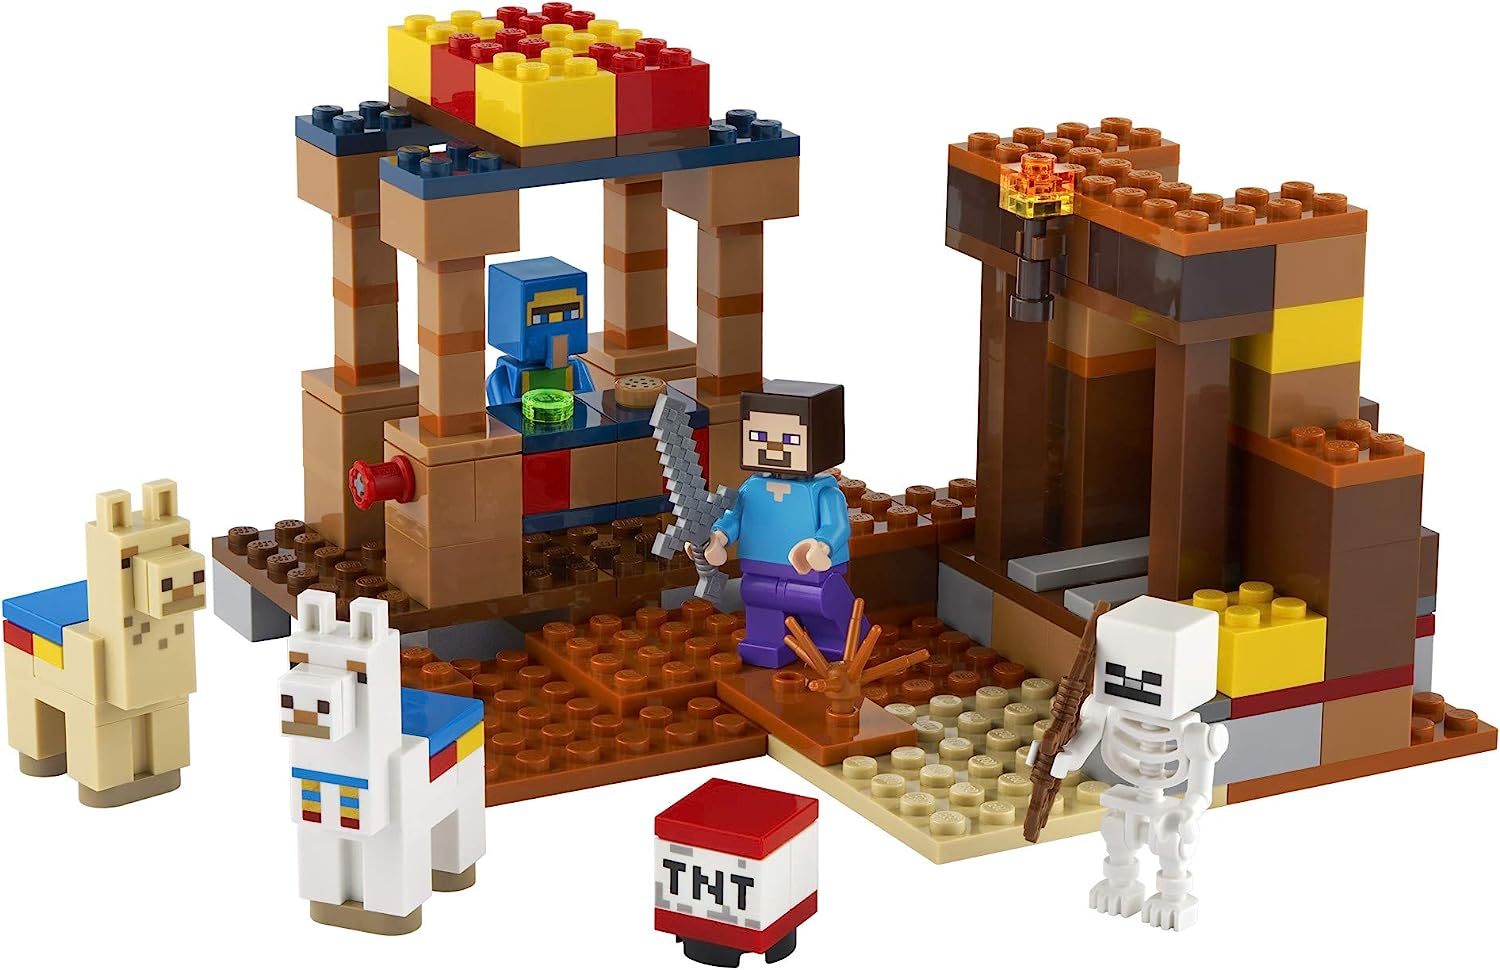 楽天市場 レゴ マインクラフト 送料無料 Lego Minecraft The Trading Post Collectible Action Figure Playset With Minecraft S Steve And Skeleton Toys New 21 1 Pieces レゴ マインクラフト Angelica